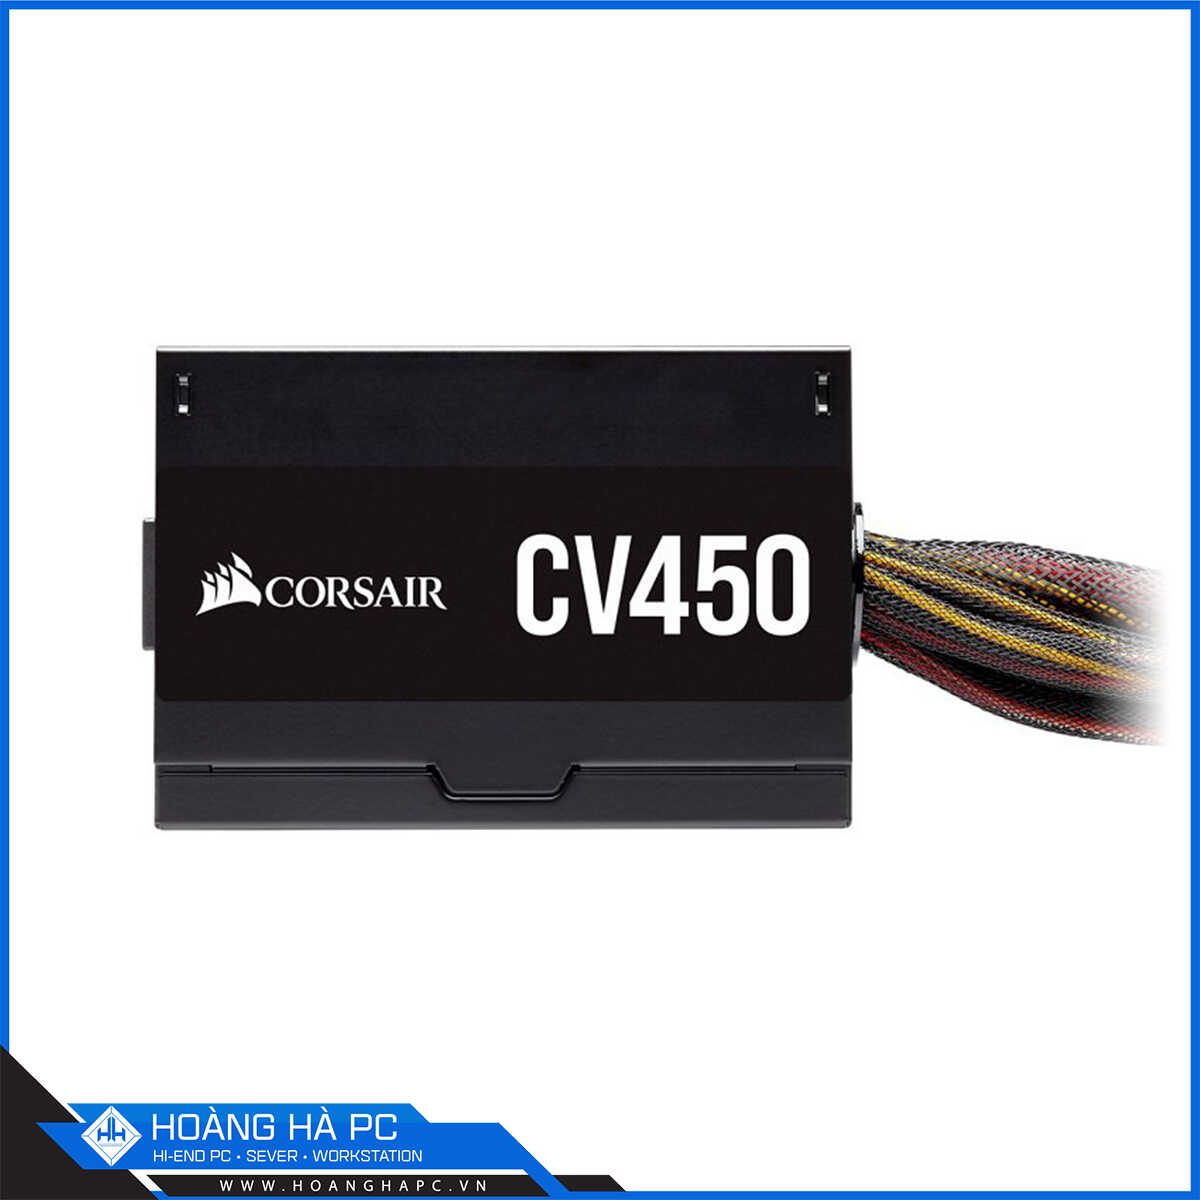 Corsair Series CV 450 450w